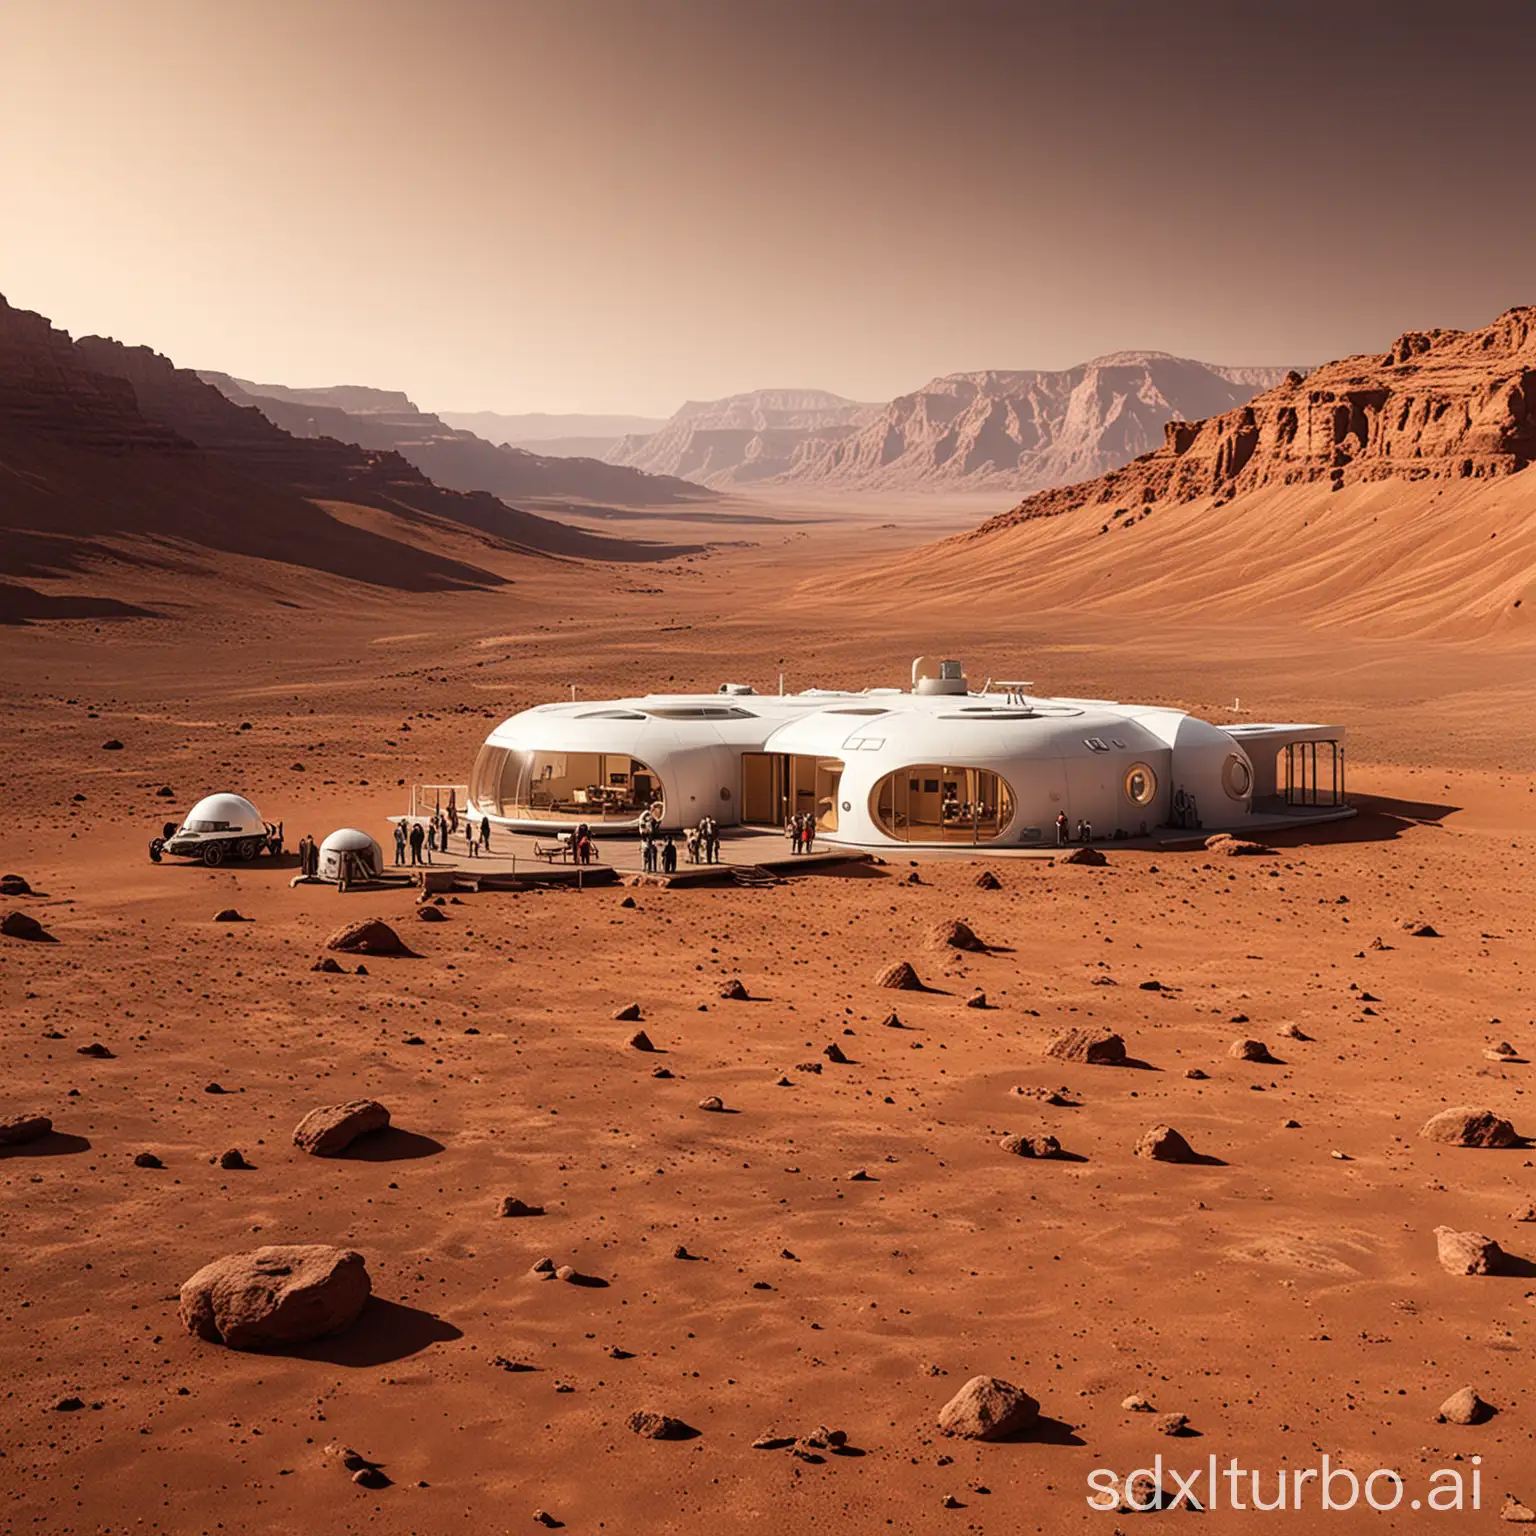 Futuristic-Living-SingleFamily-House-on-Mars